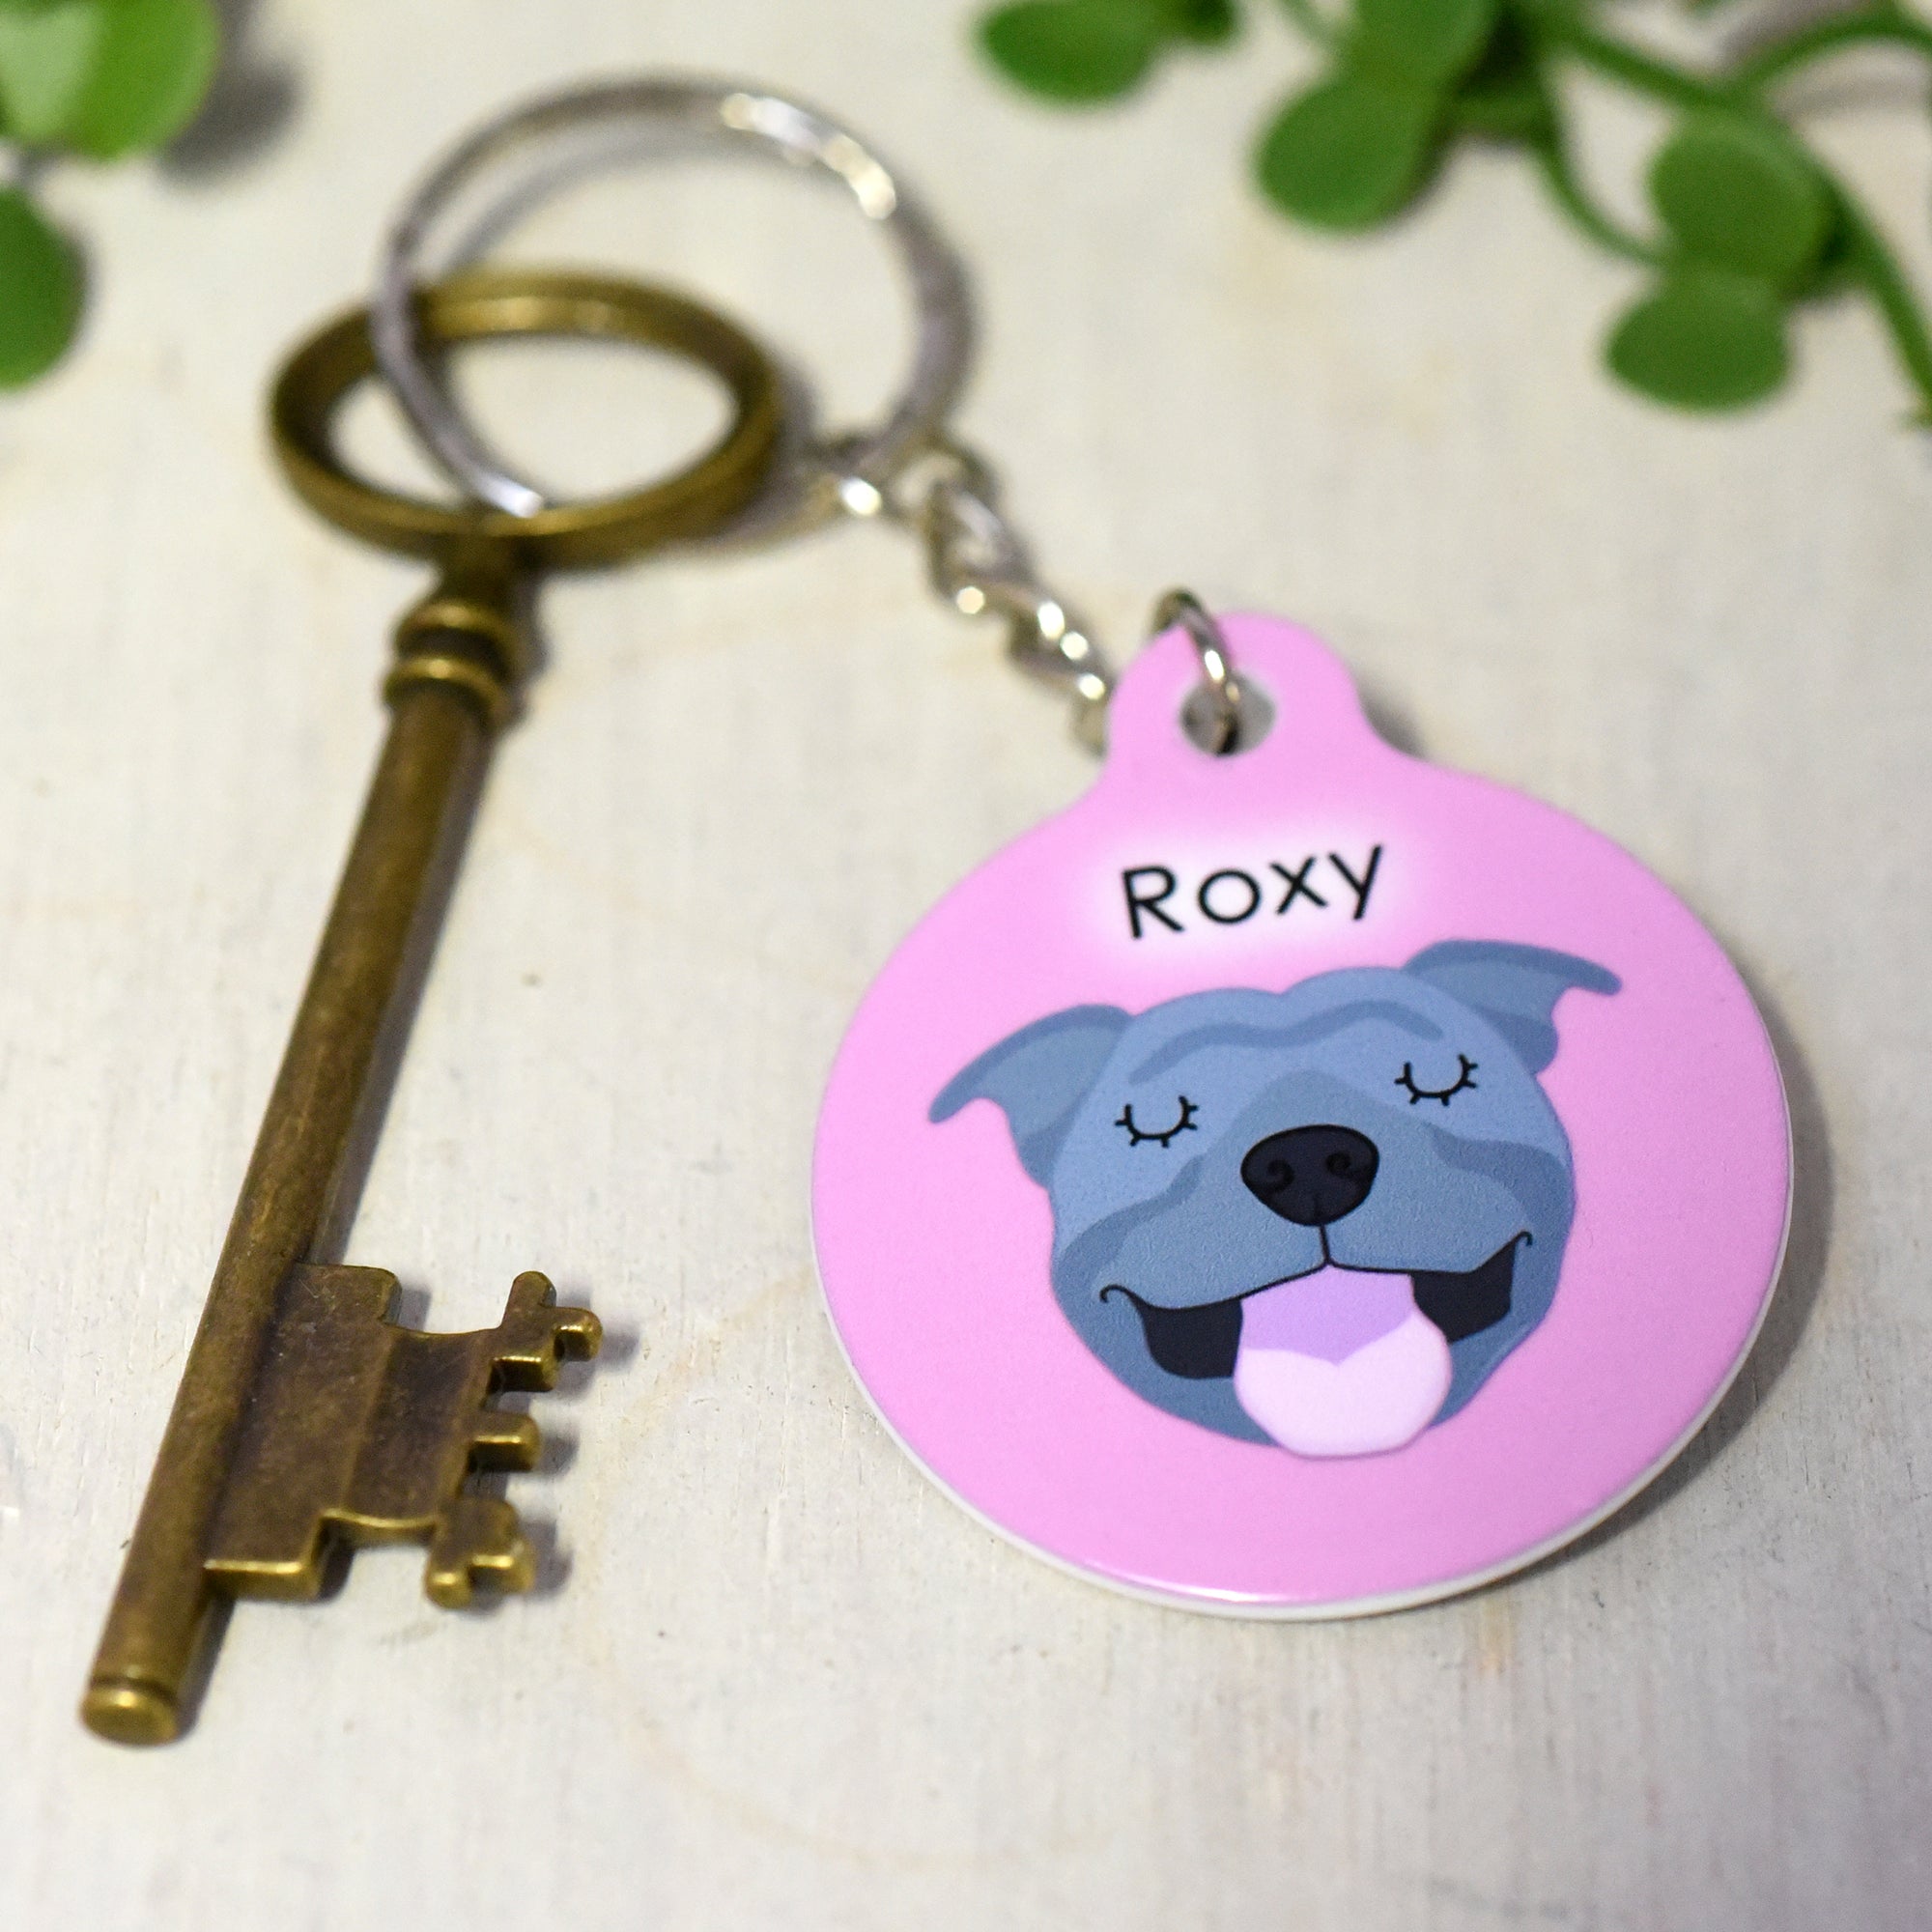 Personalised Dog Keyring